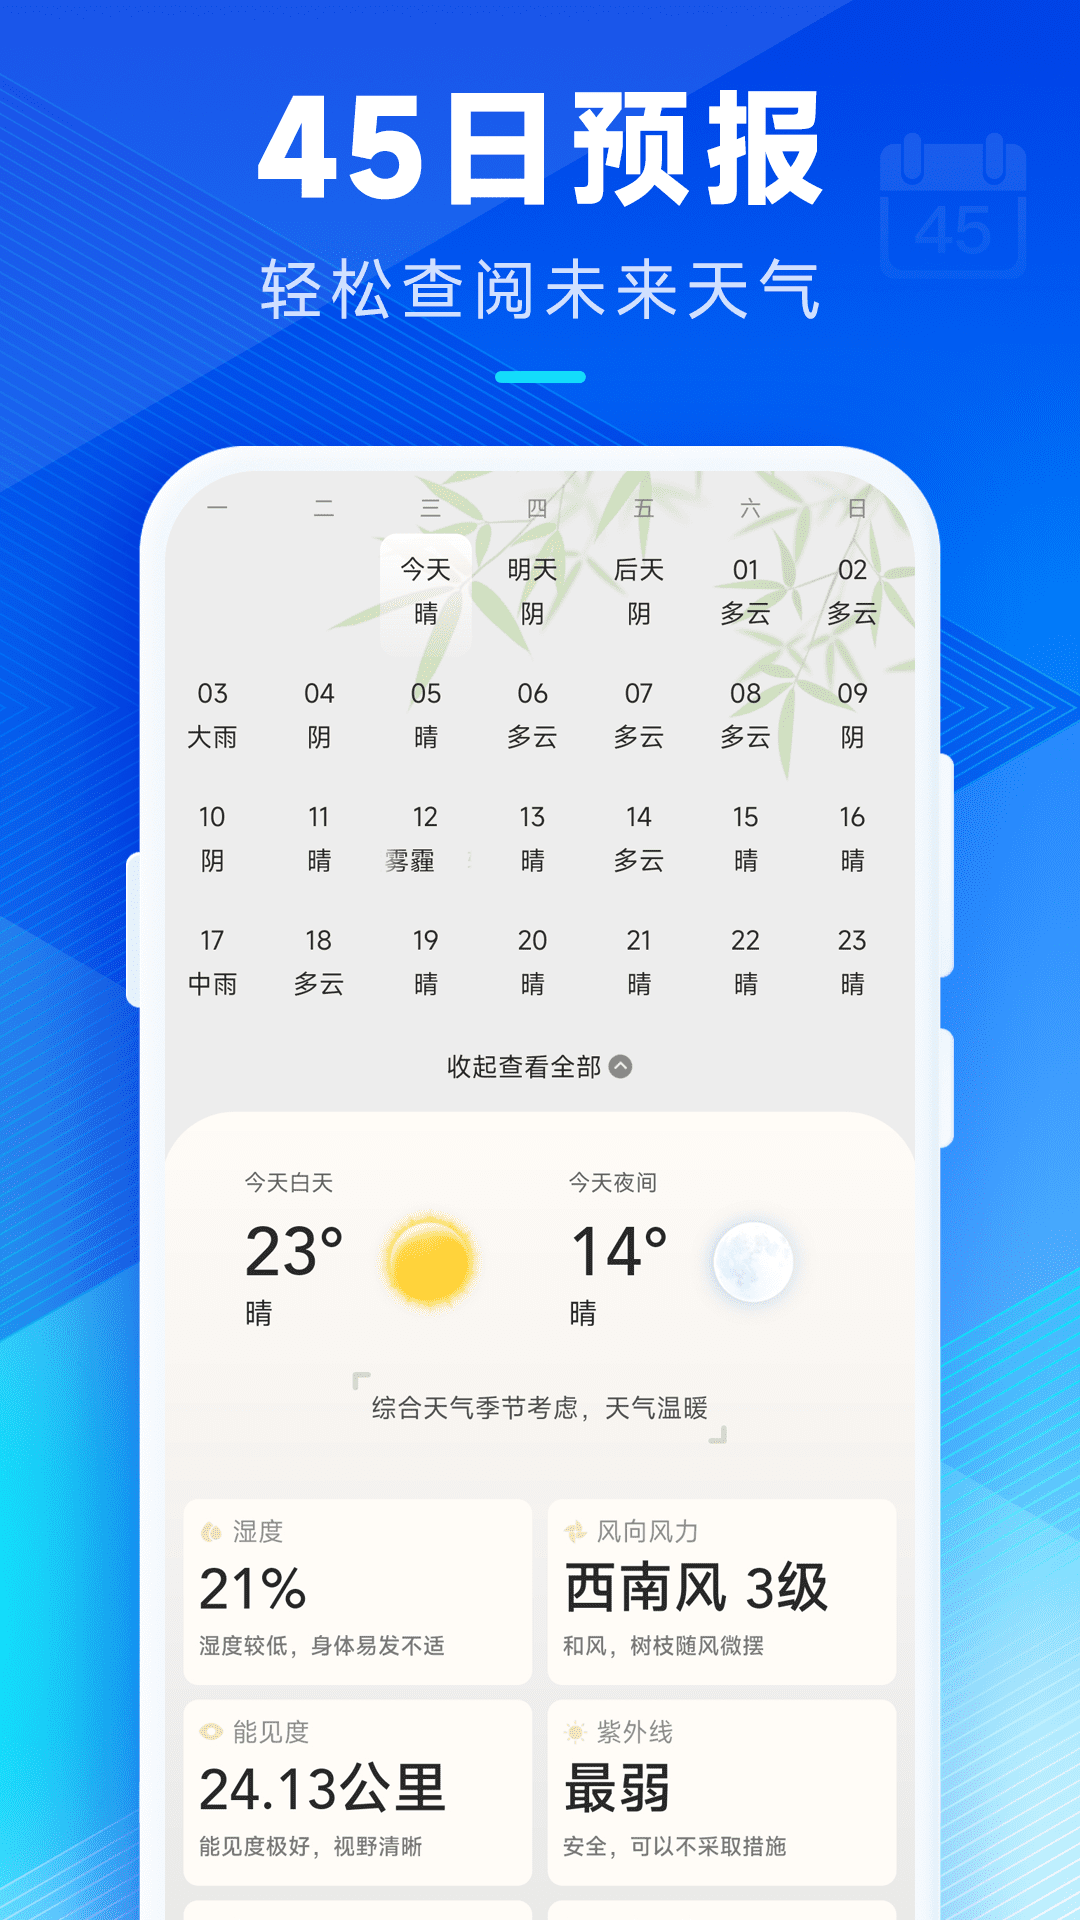 希望天气预报App最新版截图1: